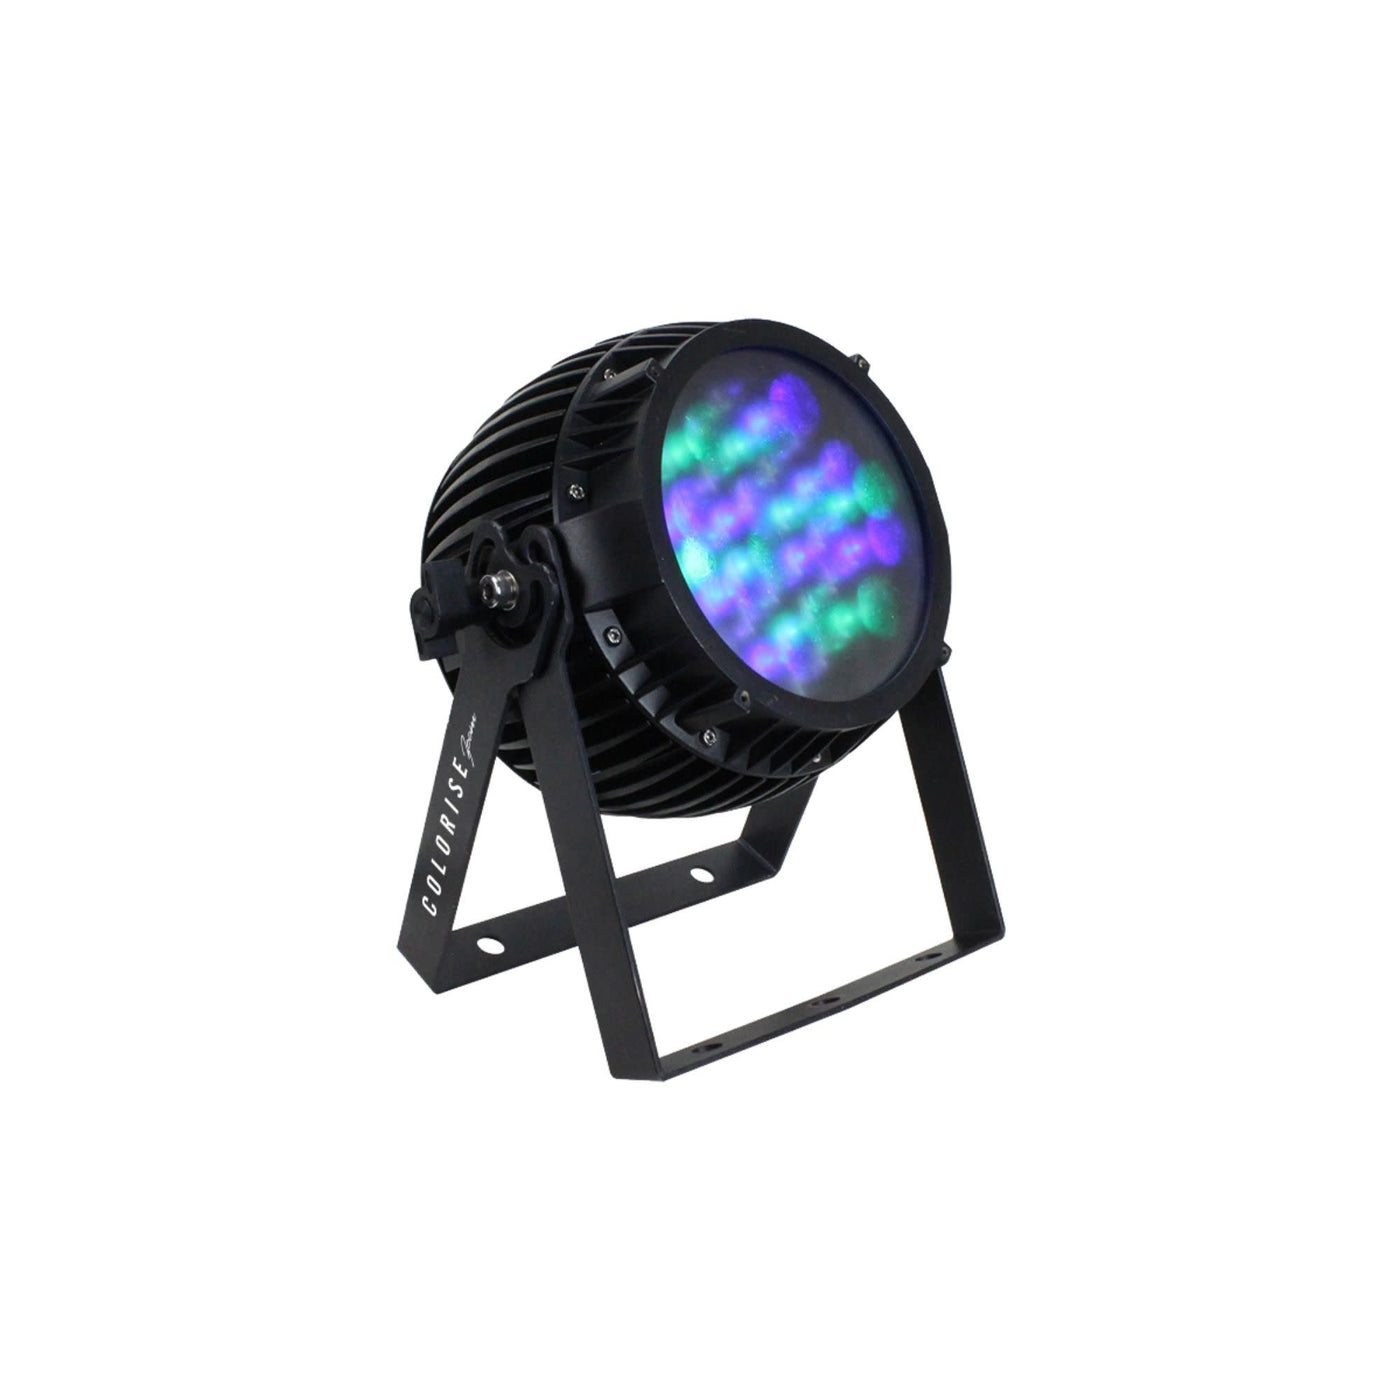 Blizzard 123504 Colorise Zoom RGBAW LED Par Fixture with 36x 3W R/G/B/A/W LEDs, Black Housing